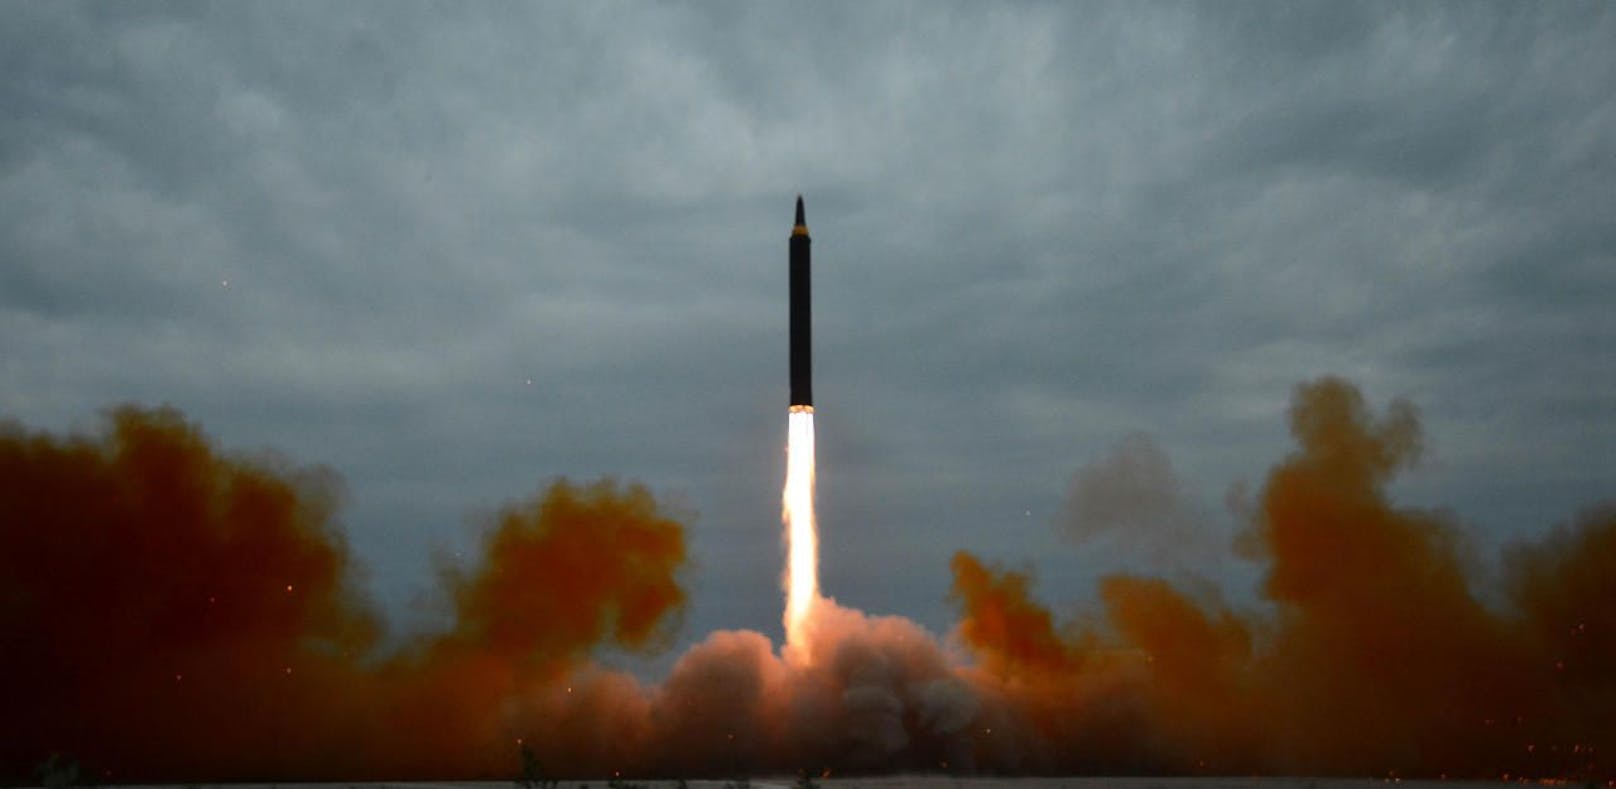 Nordkoreas Rakete kann Washington wirklich treffen